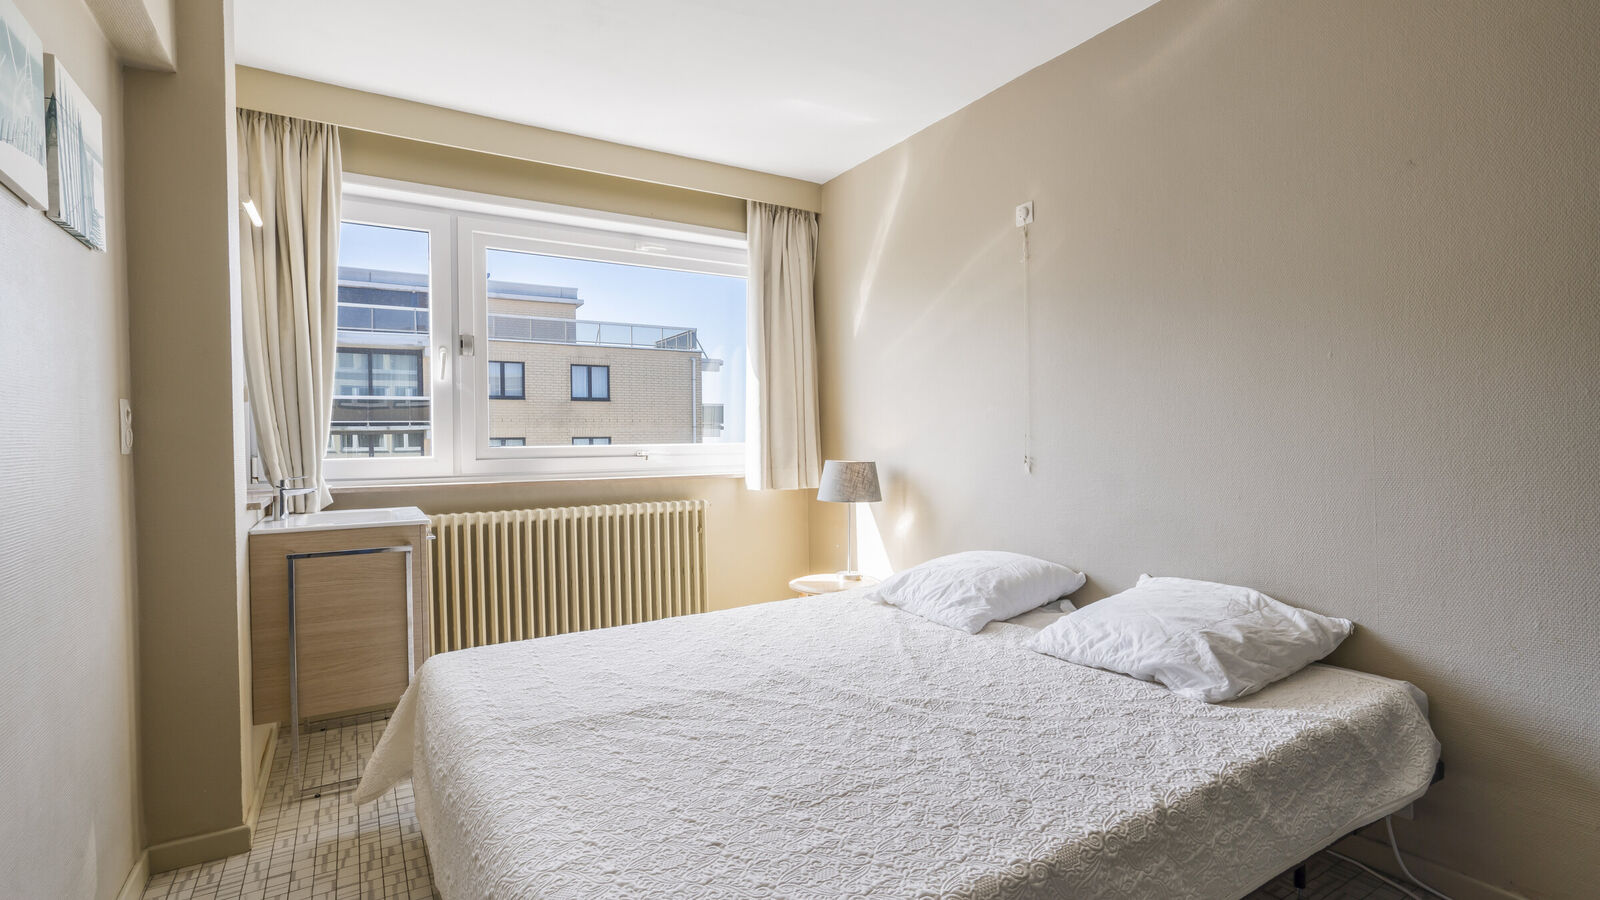 App. 4 bedrooms in Koksijde